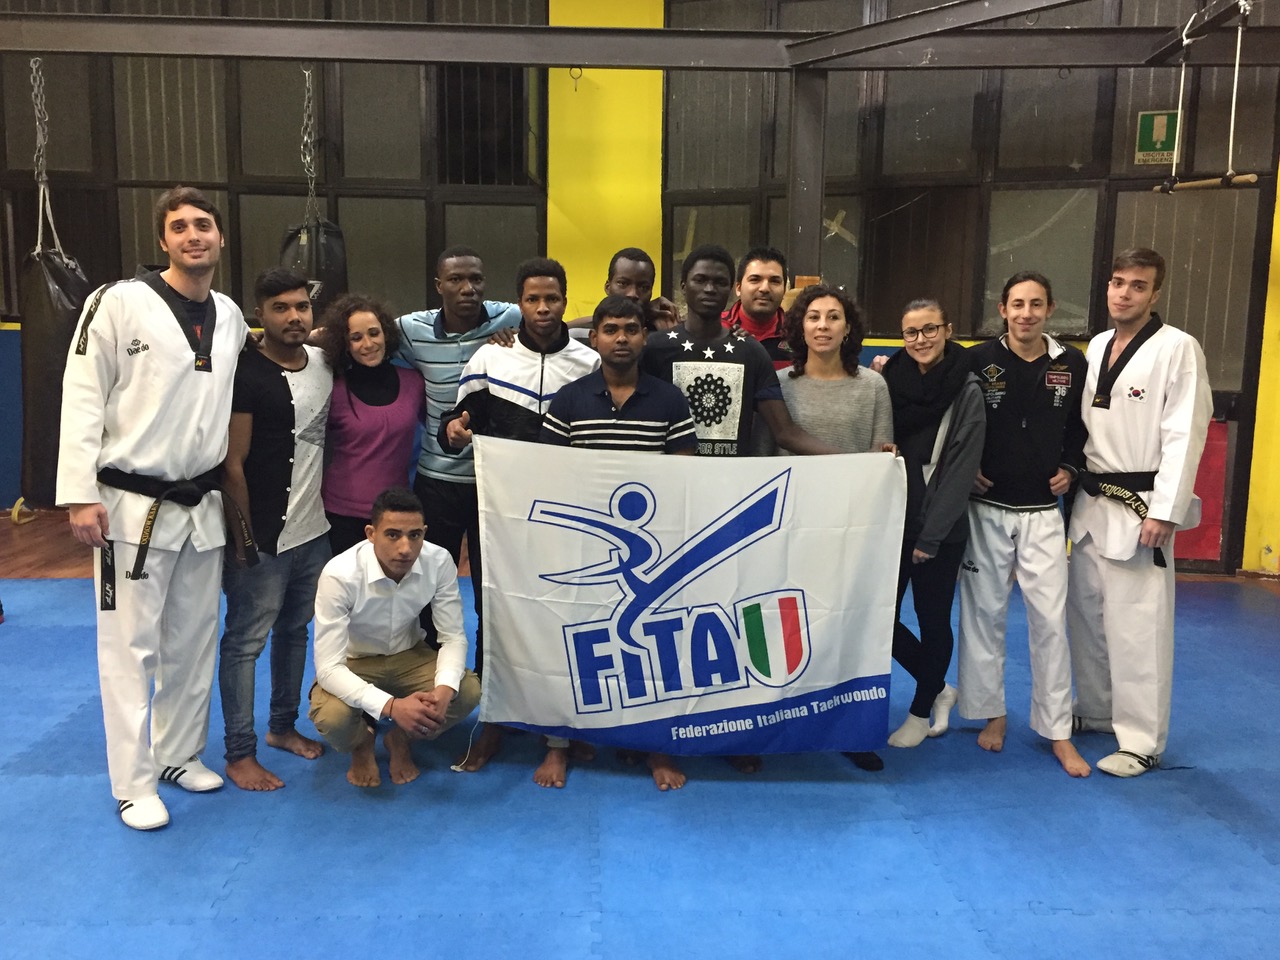 Lezioni gratuite ai migranti, Taekwondo e solidarietà a Palermo.